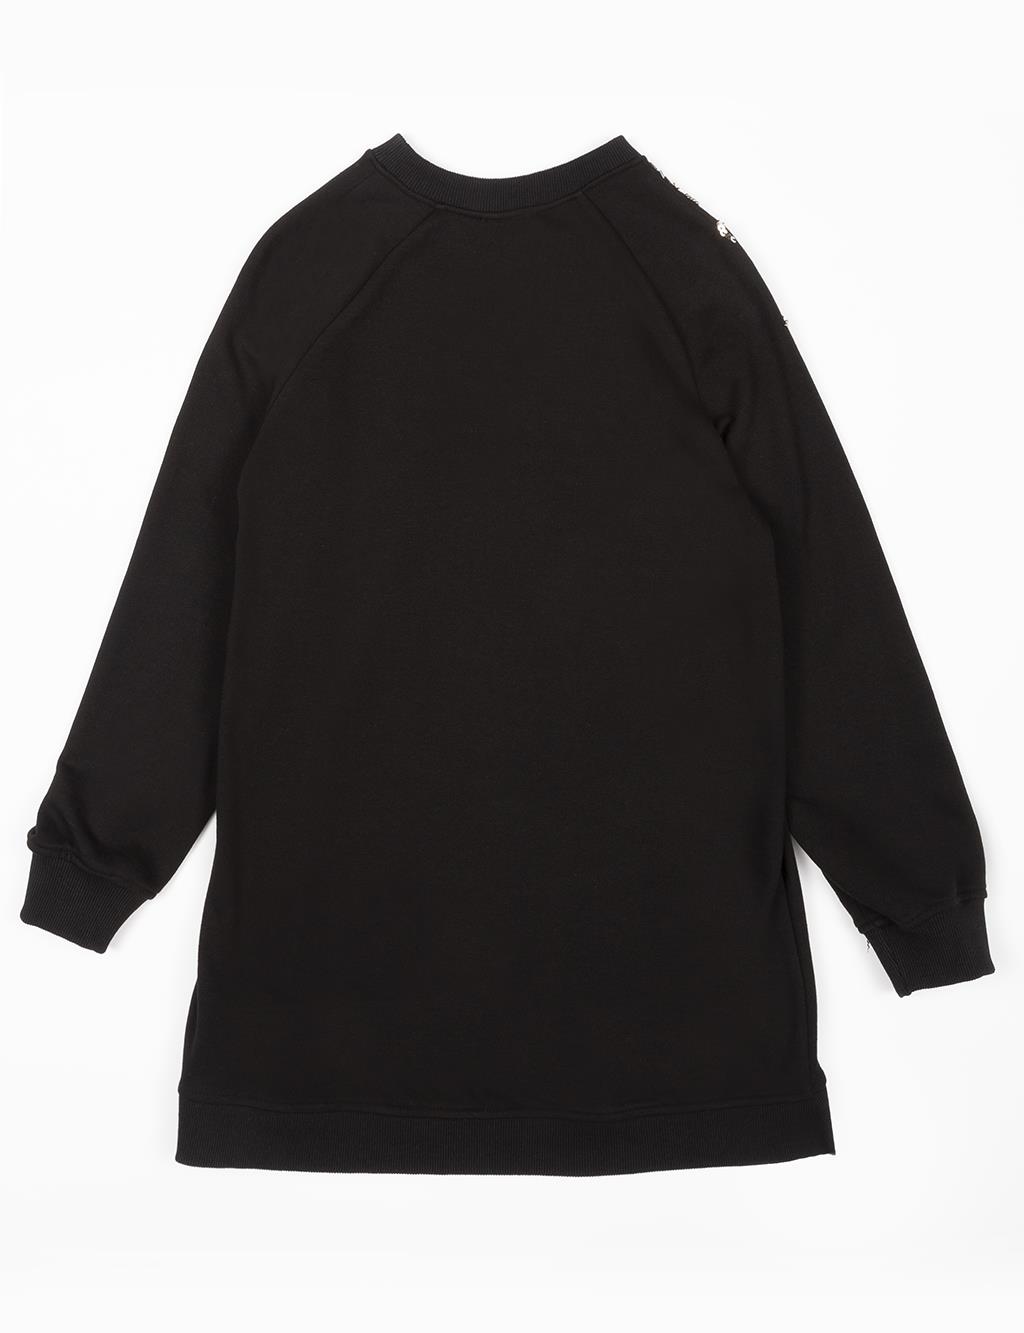 Sequined Sweatshirt Black